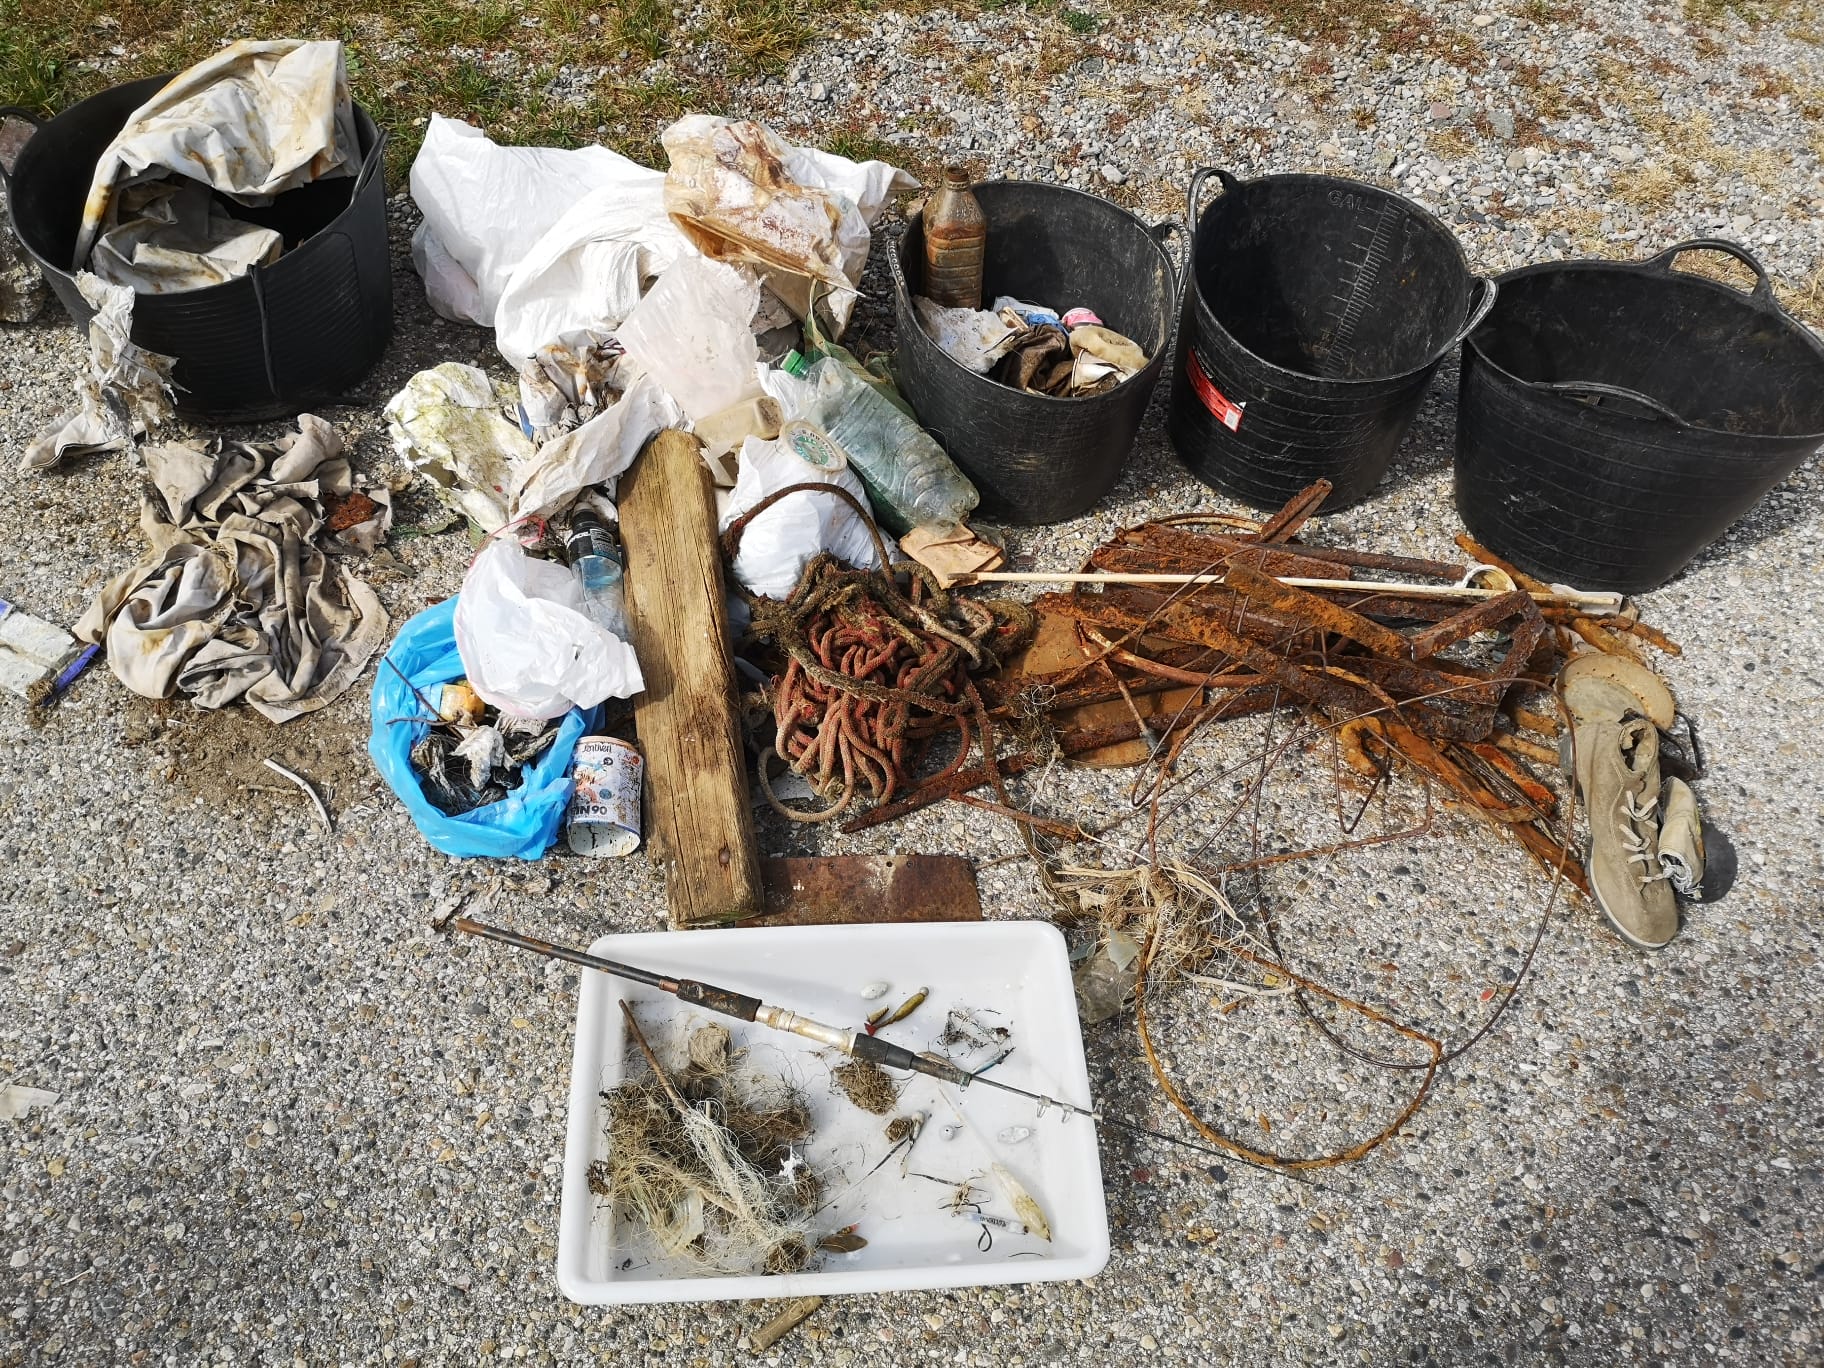 Imagen del artículo Retirats esquers de pesca abandonats i brossa acumulada de la presa de Cavallers aprofitant el seu baix nivell